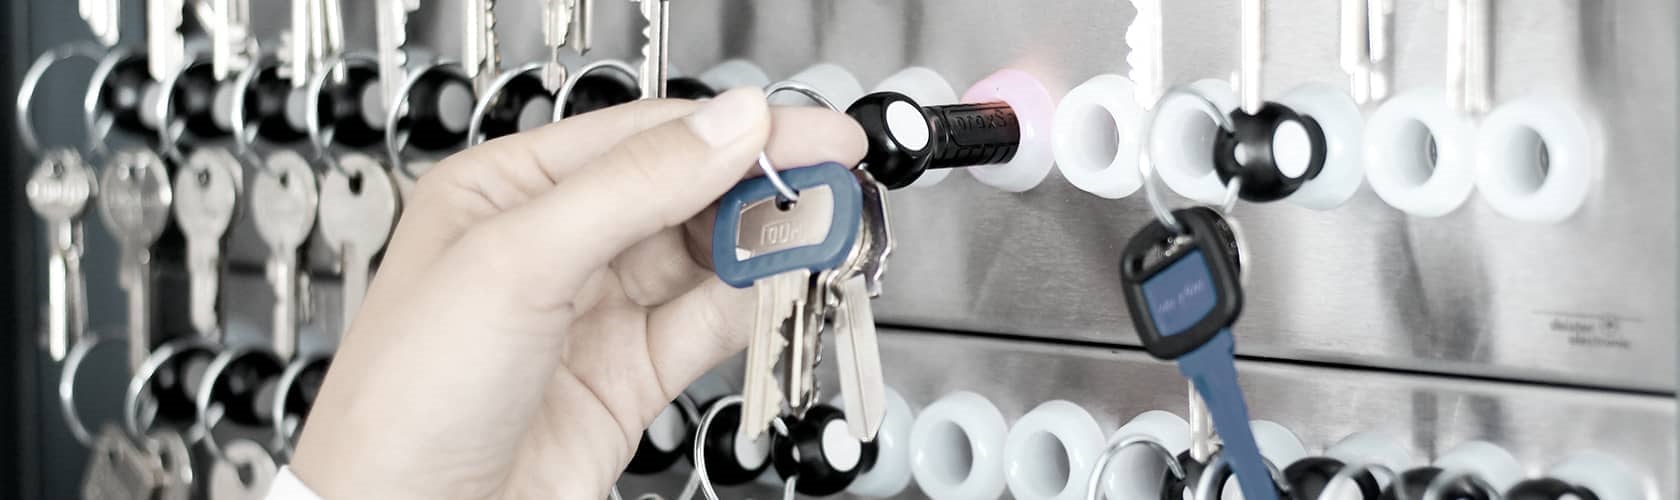 Schlüsselmanagement Kontrollierte Schlüsselverwaltung leicht gemacht – mit einem elektronischen Schlüsselmanagementsystem